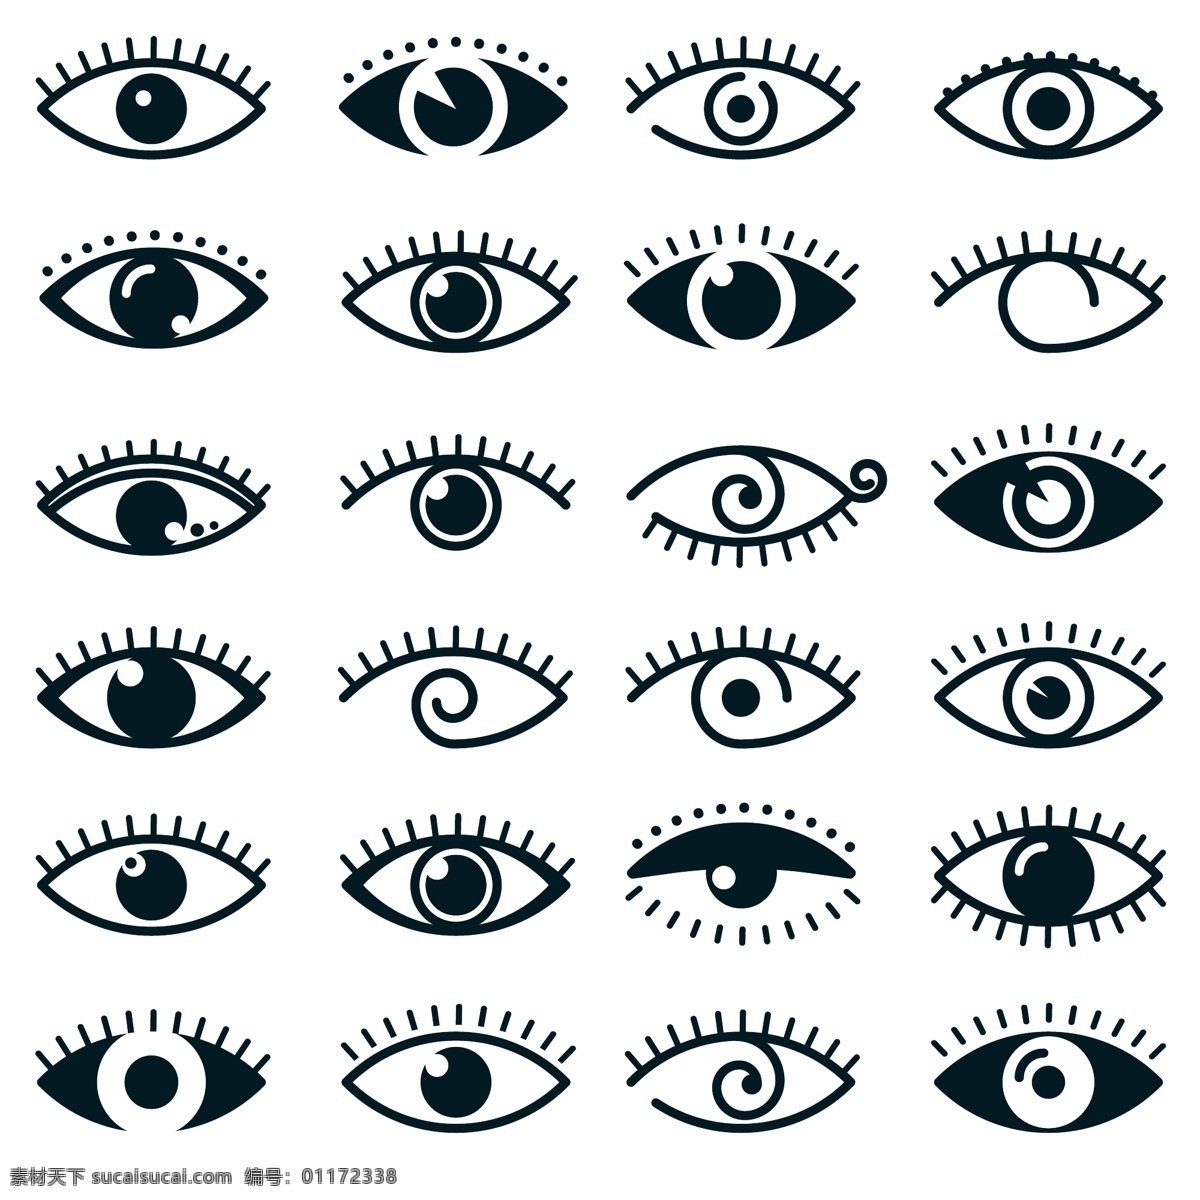 不同 眼睛 图标 收藏 图标集 包装 轮廓 集合 图标包 不同的 概述 白色